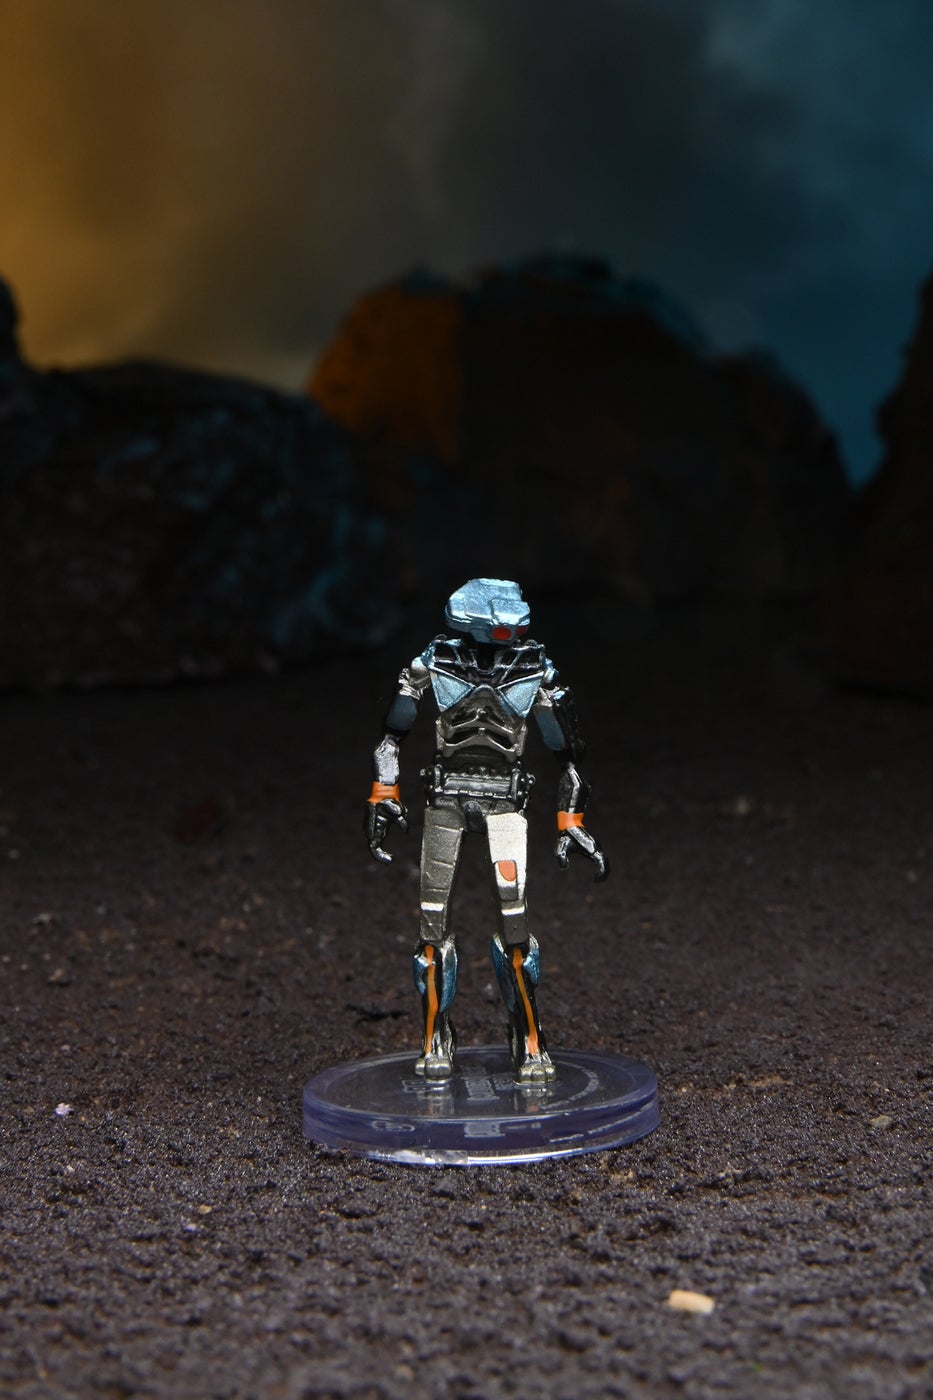 Starfinder SRO Medium mini figure